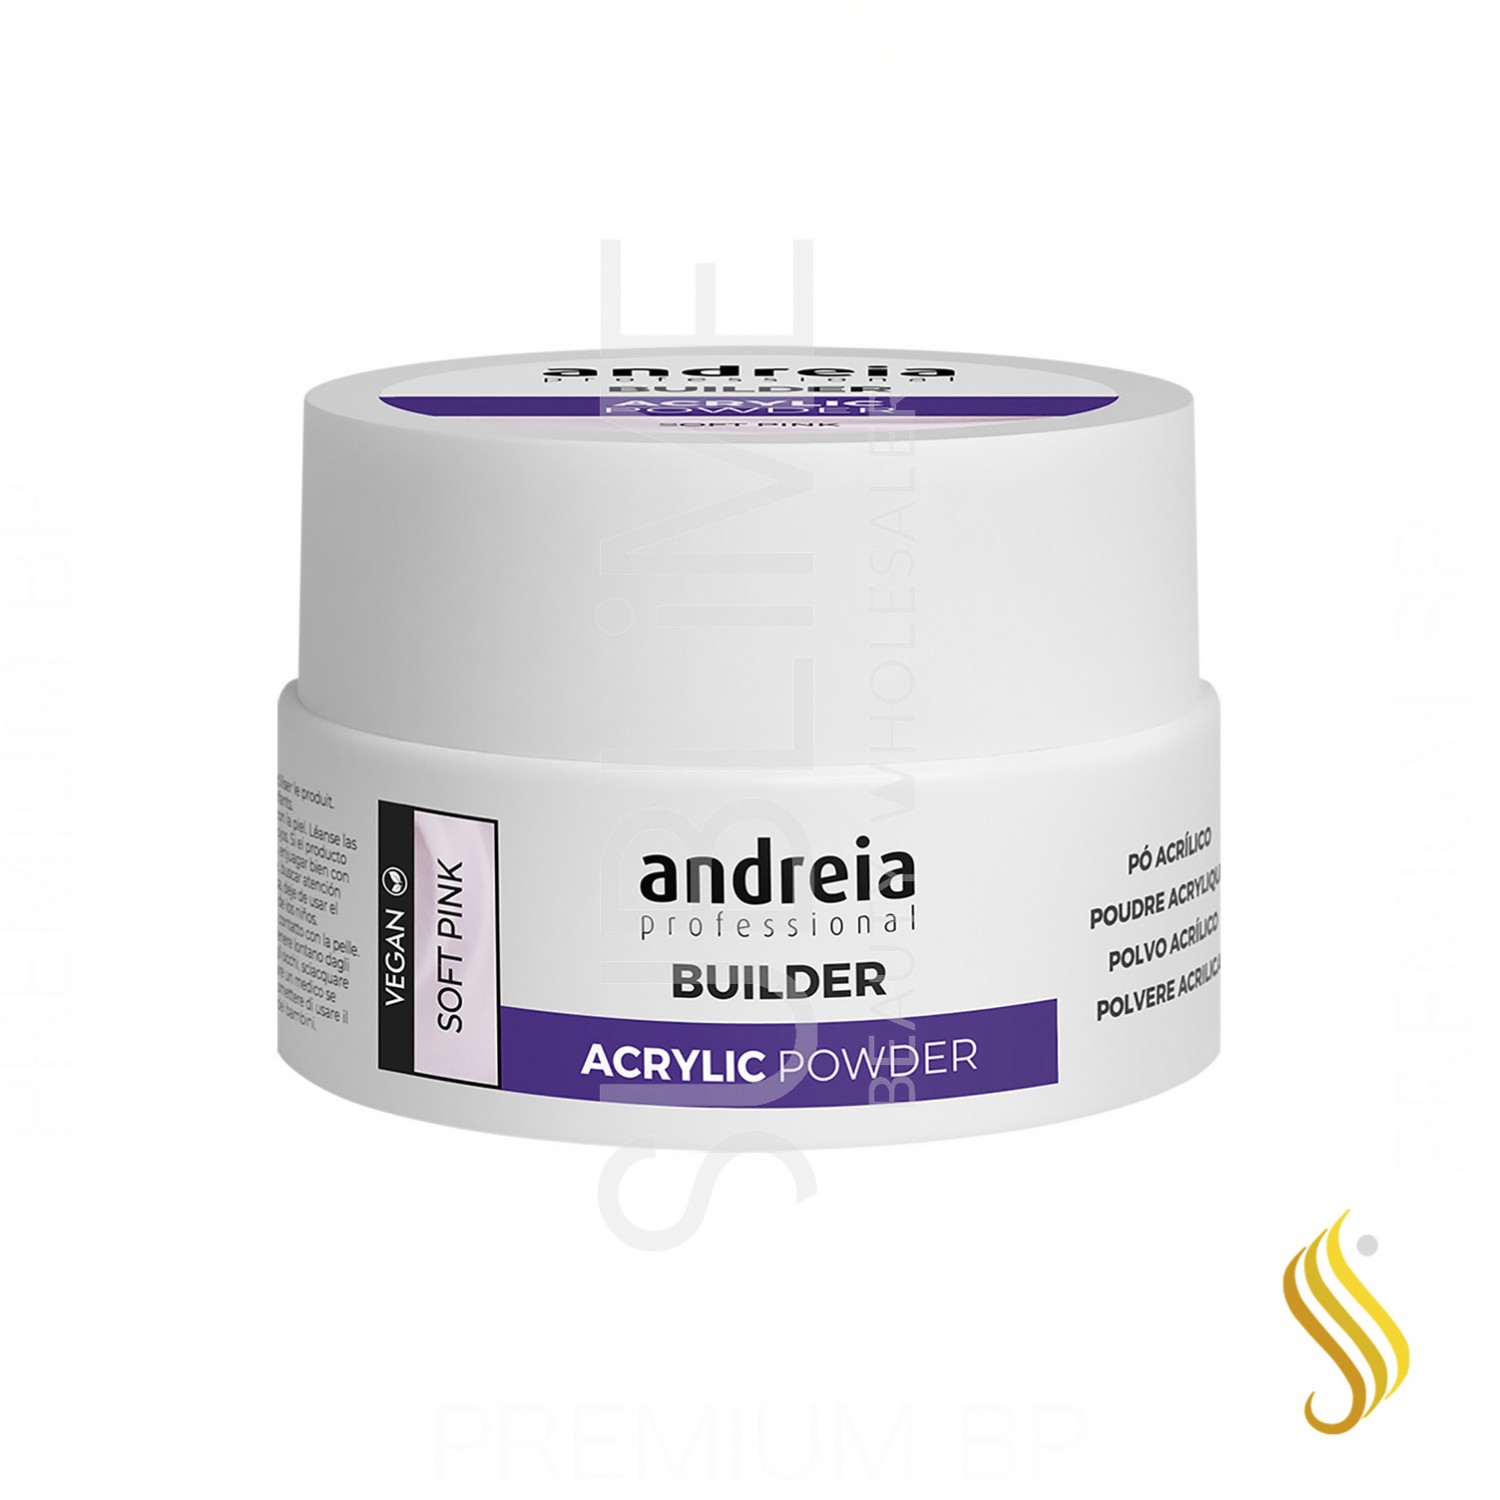 Andreia Professional Builder Acrylic Powder Polvos Acrilicos Soft Pink 20 g